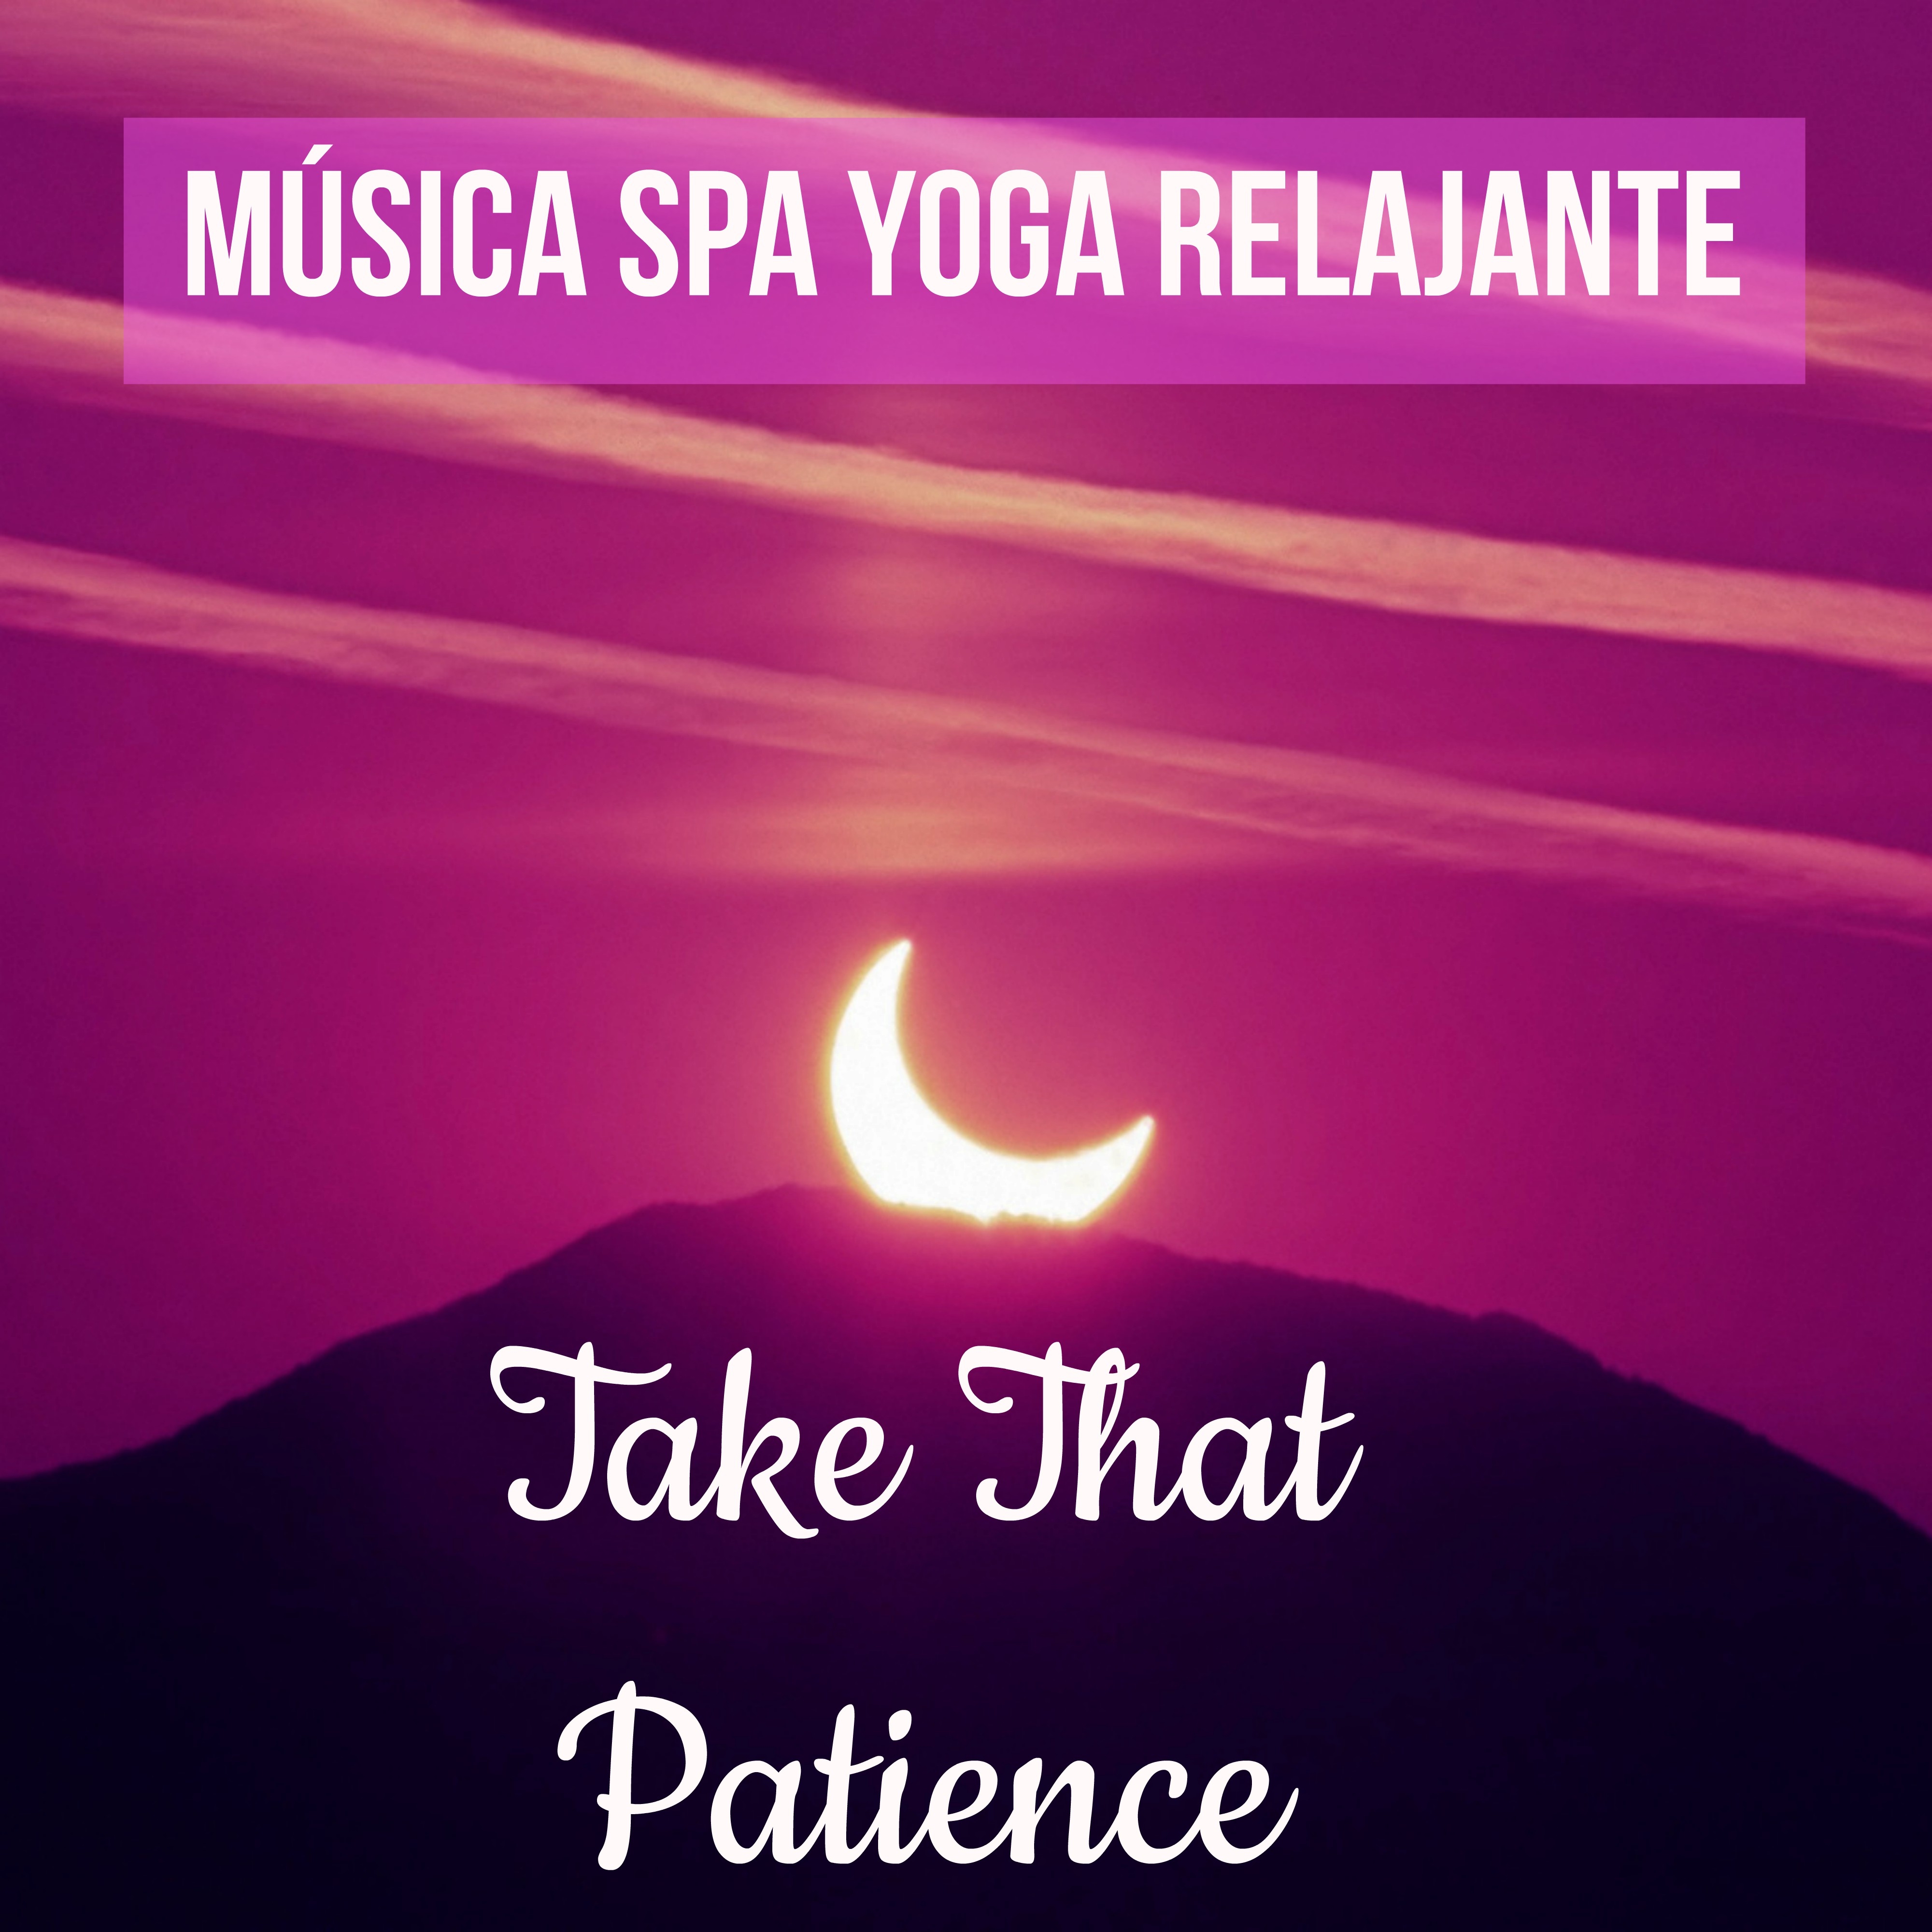 Take That Patience  Mu sica Spa Yoga Relajante para Controlar la Ansiedad Mente Sana Atitud Positiva con Sonidos Instrumentales New Age Bienestar